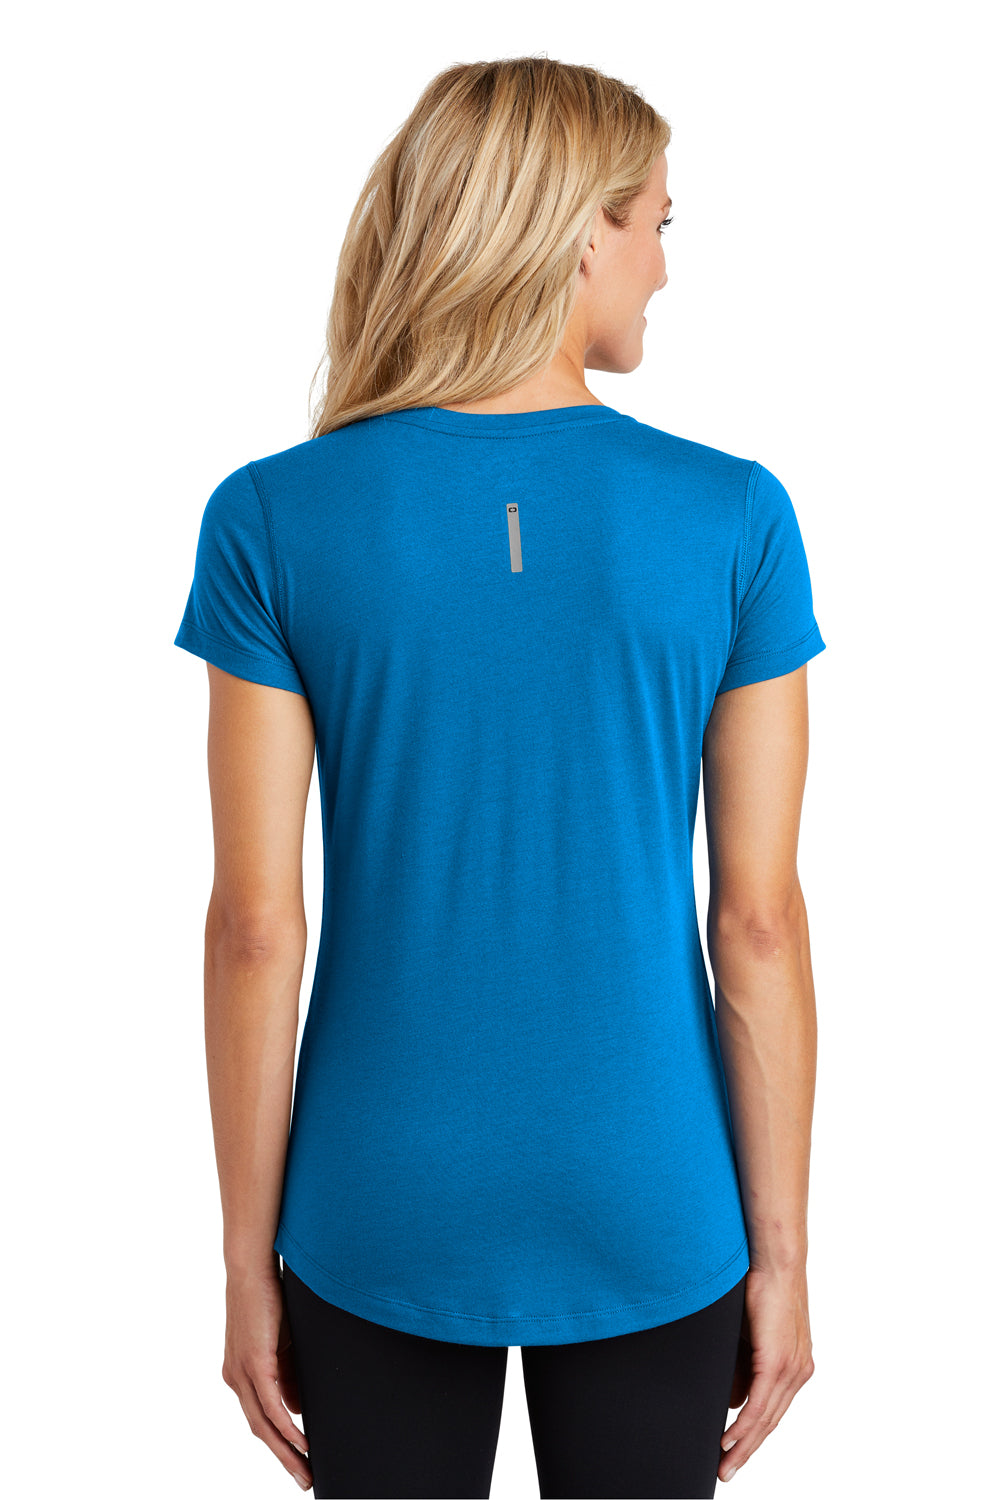 Ogio LOE337 Womens Endurance Peak Jersey Moisture Wicking Short Sleeve V-Neck T-Shirt Blue Back